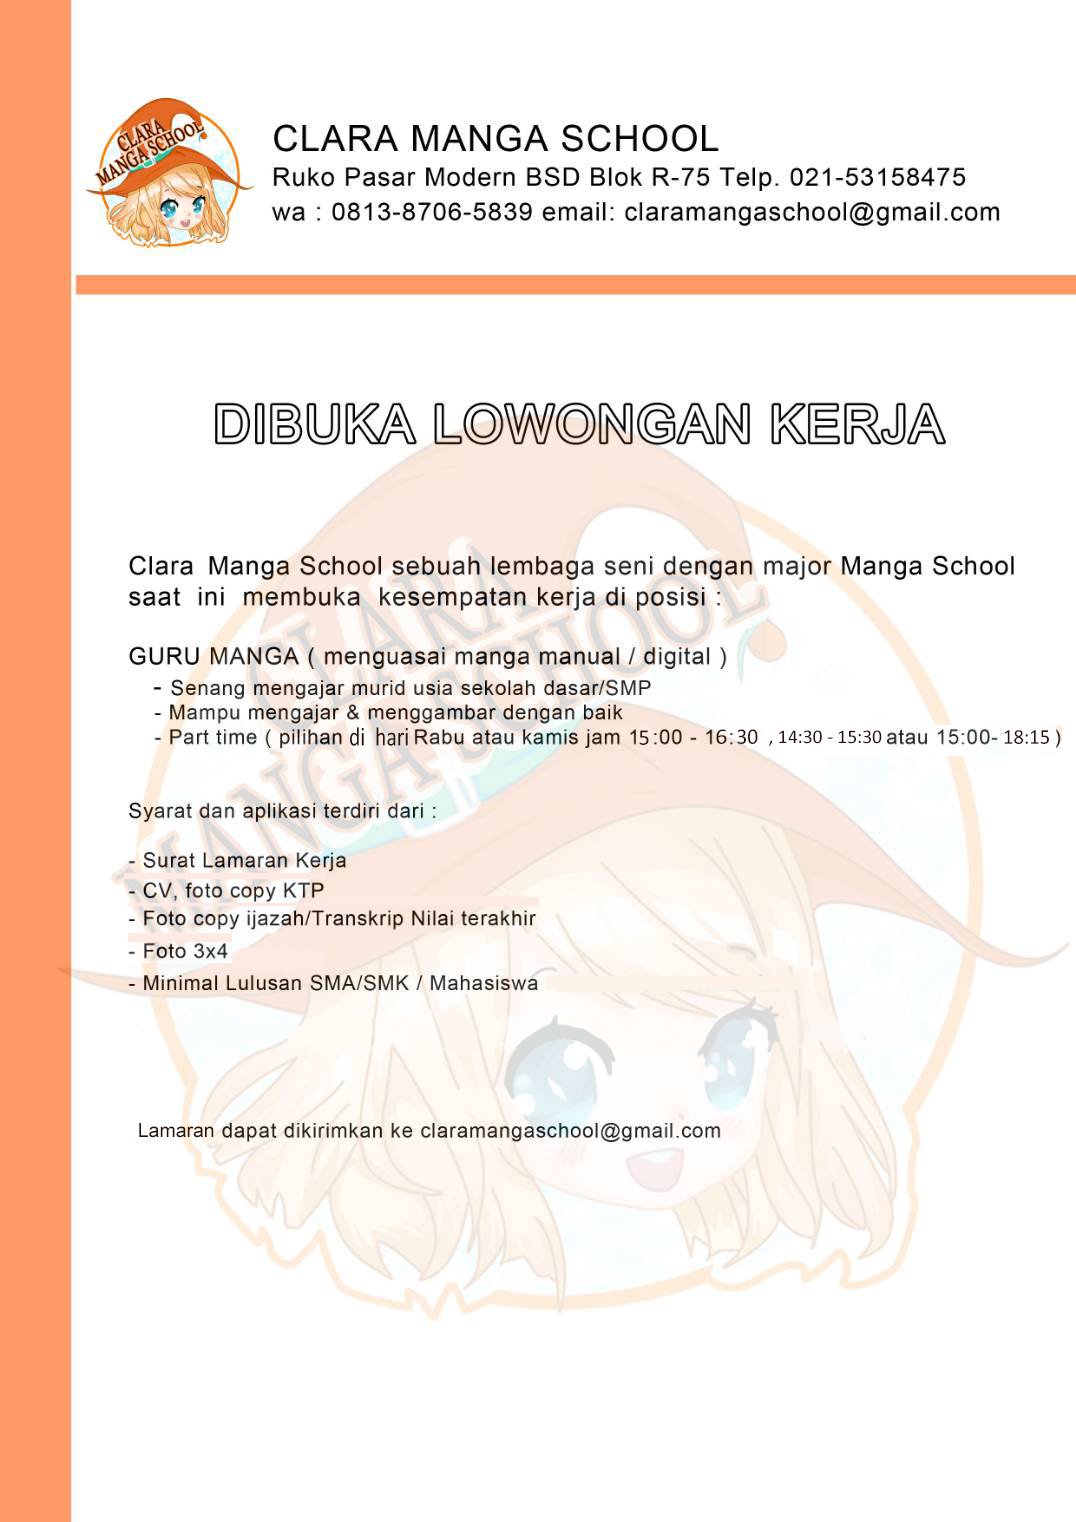 Clara Manga School Di Twitter Lowongan Pekerjaan Lowongan Lowonganpekerjaan Info Infolowongan Guru Gurugambar Mengajar Manga Lowongantangerang Lowongantangerangselatan Tangerang Tangerangselatan Lowongantangsel Tangsel Manga Drawing